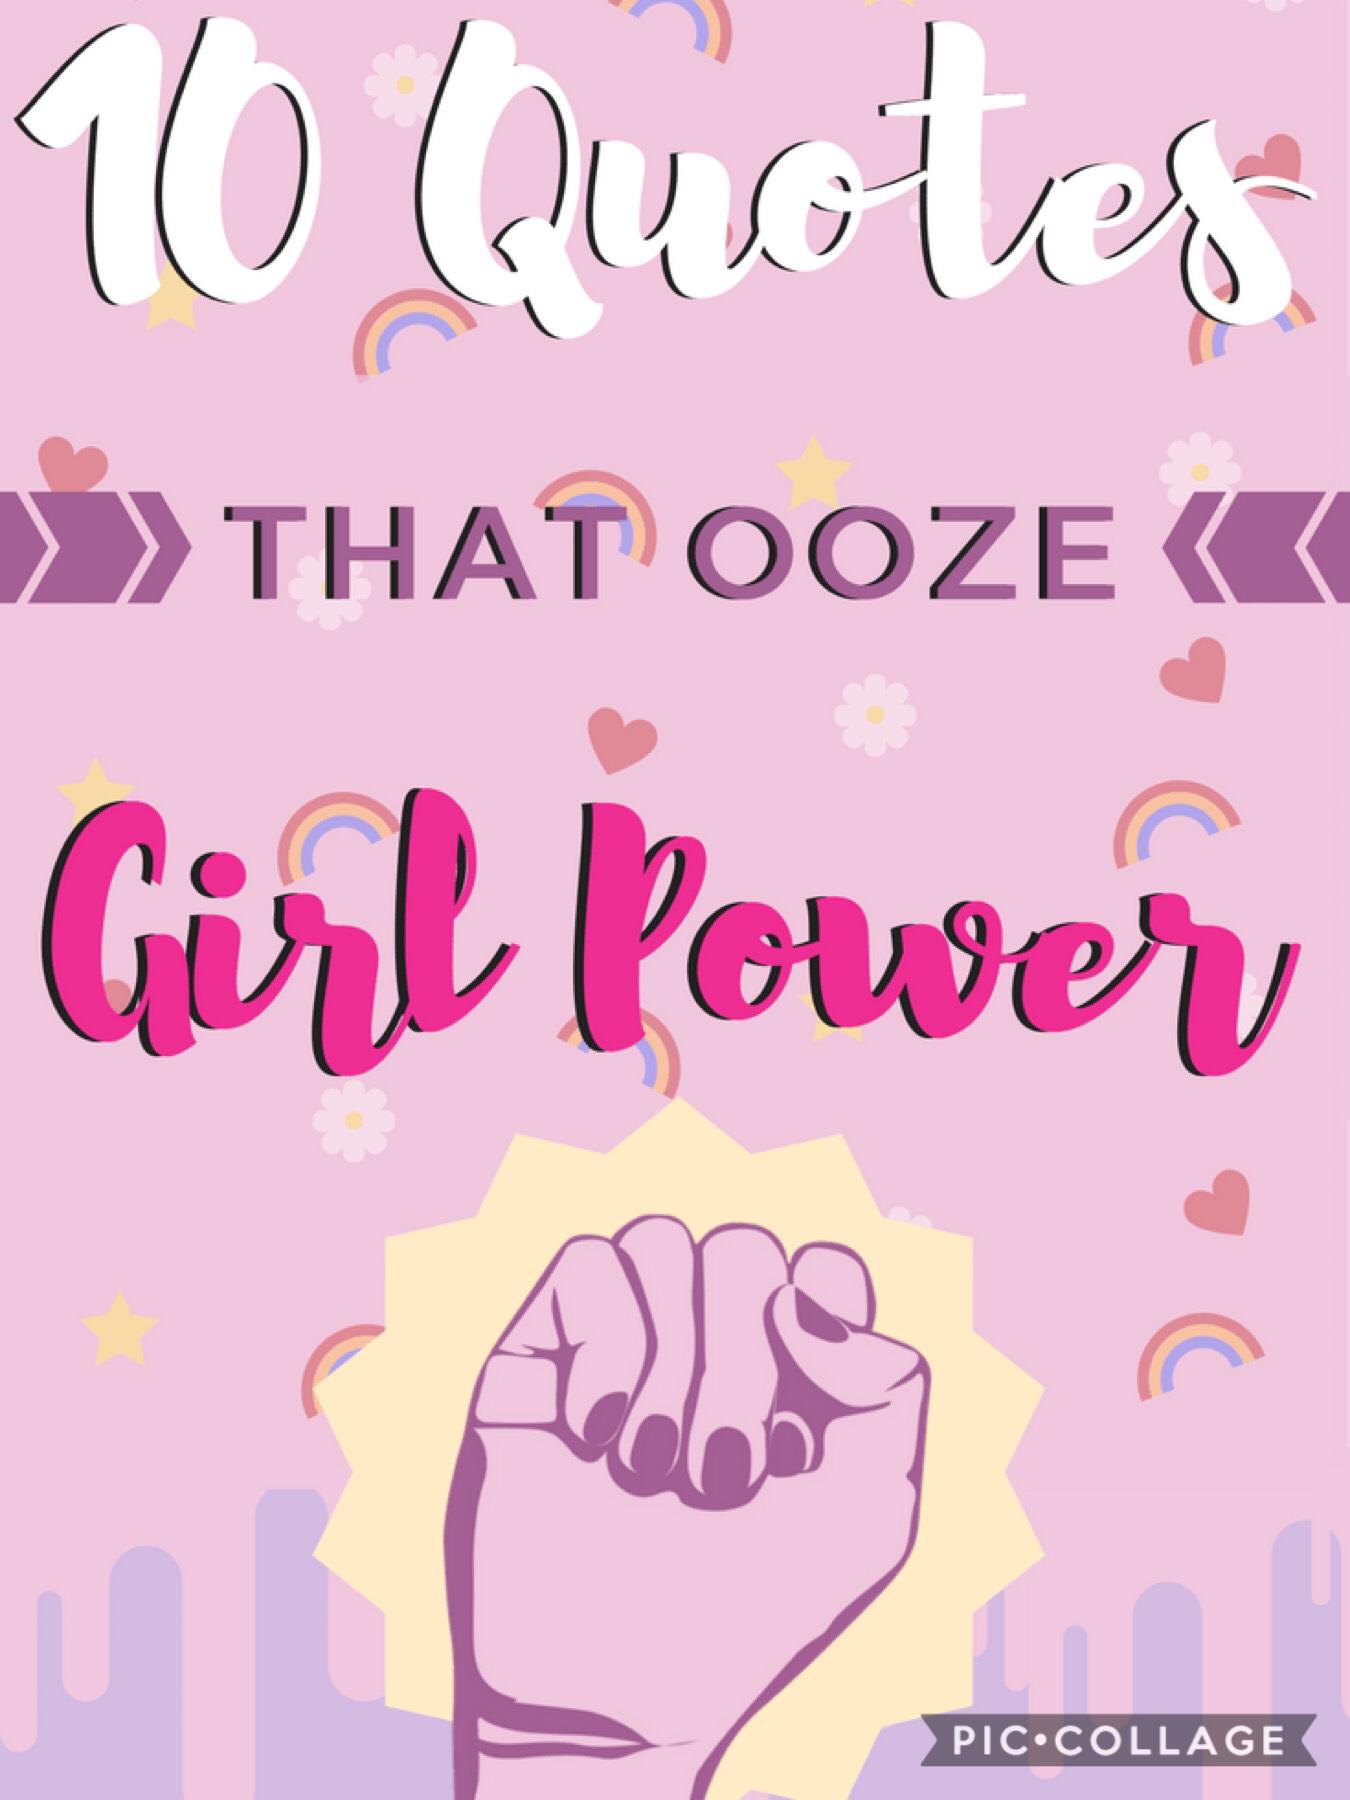 Girl power!!